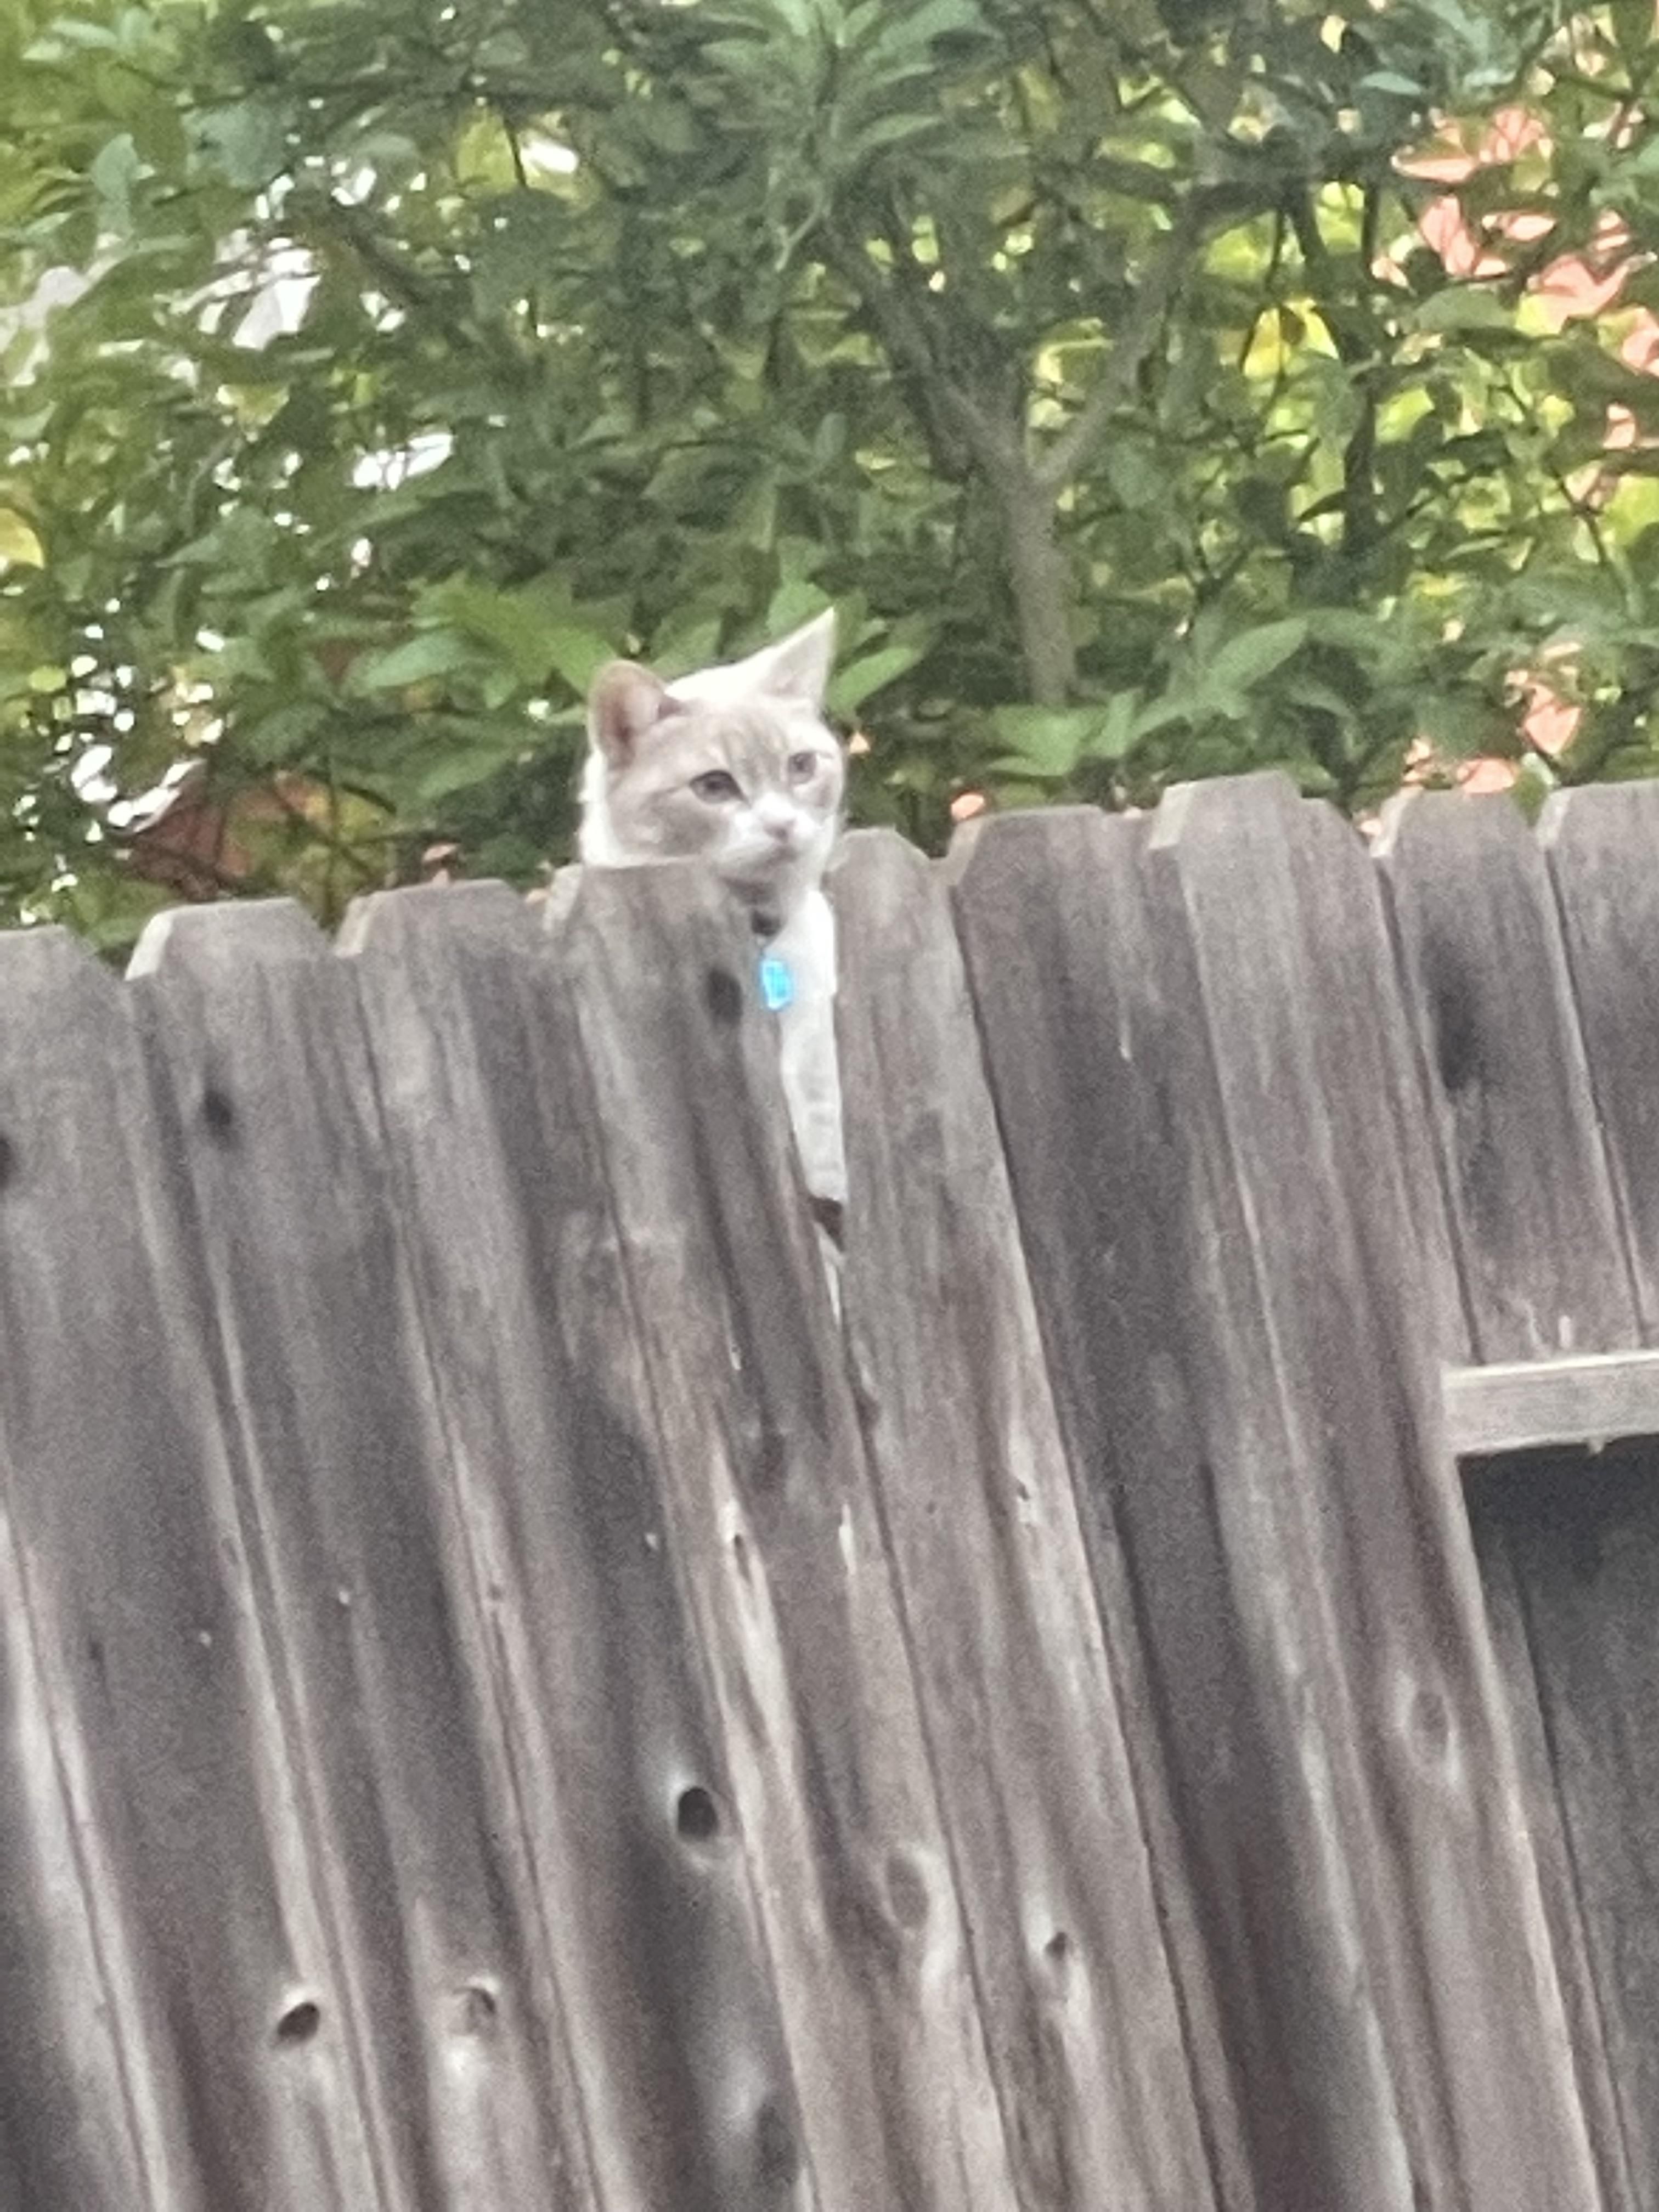 I’ve nicknamed my neighbors cat “Wilson”